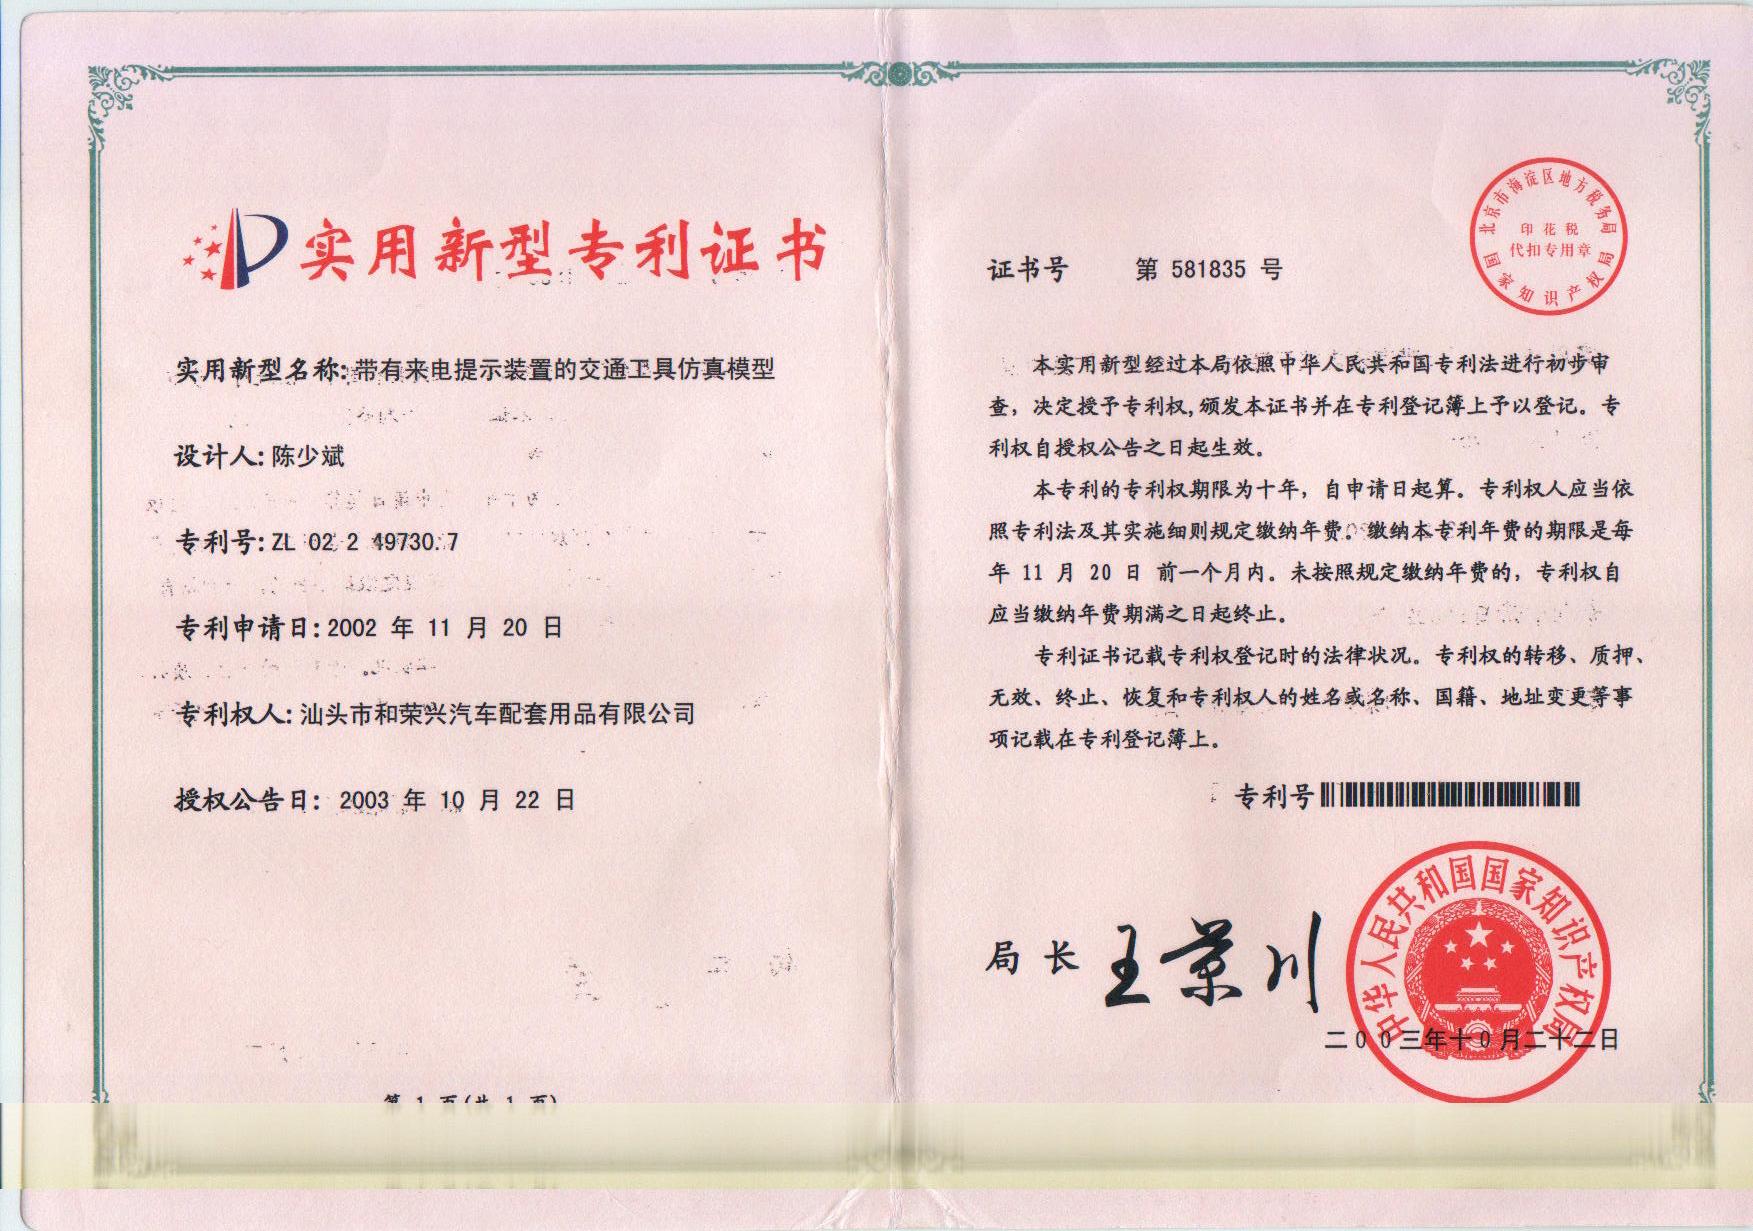 专利证书-专利号zl02249730.7